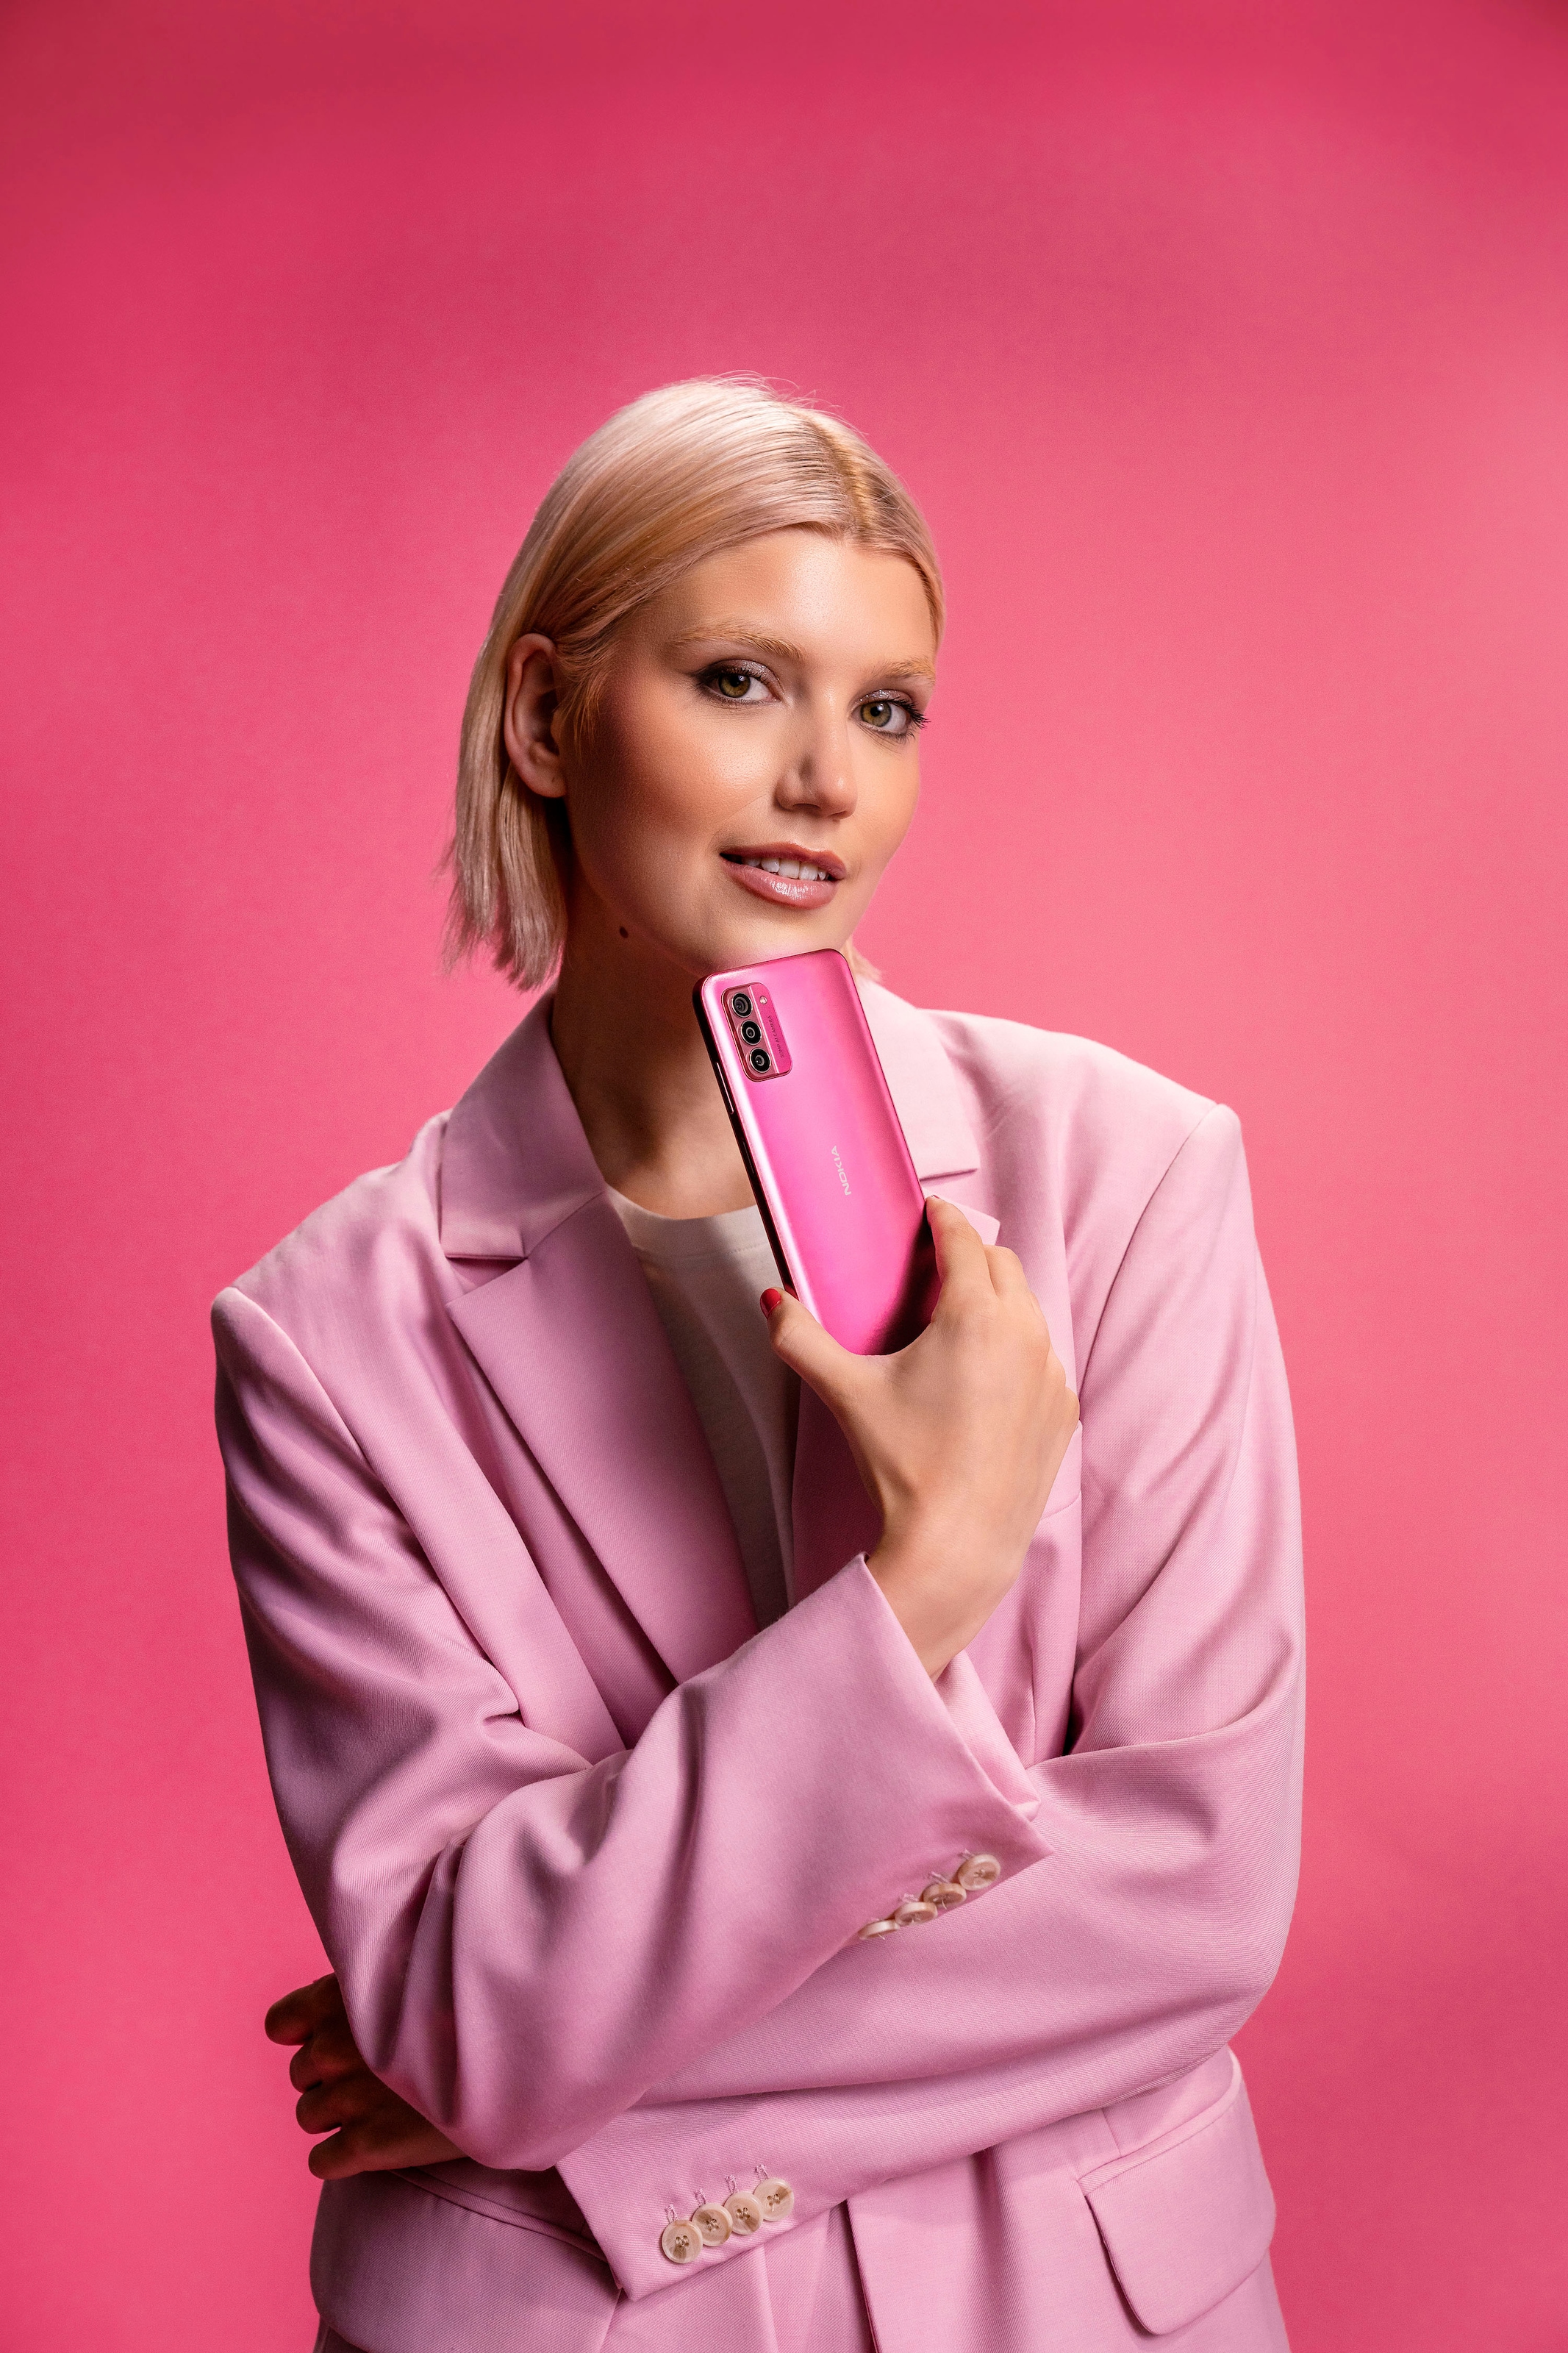 Nokia Smartphone »G42«, pink, 16,9 cm/6,65 Zoll, 128 GB Speicherplatz, 50 MP Kamera